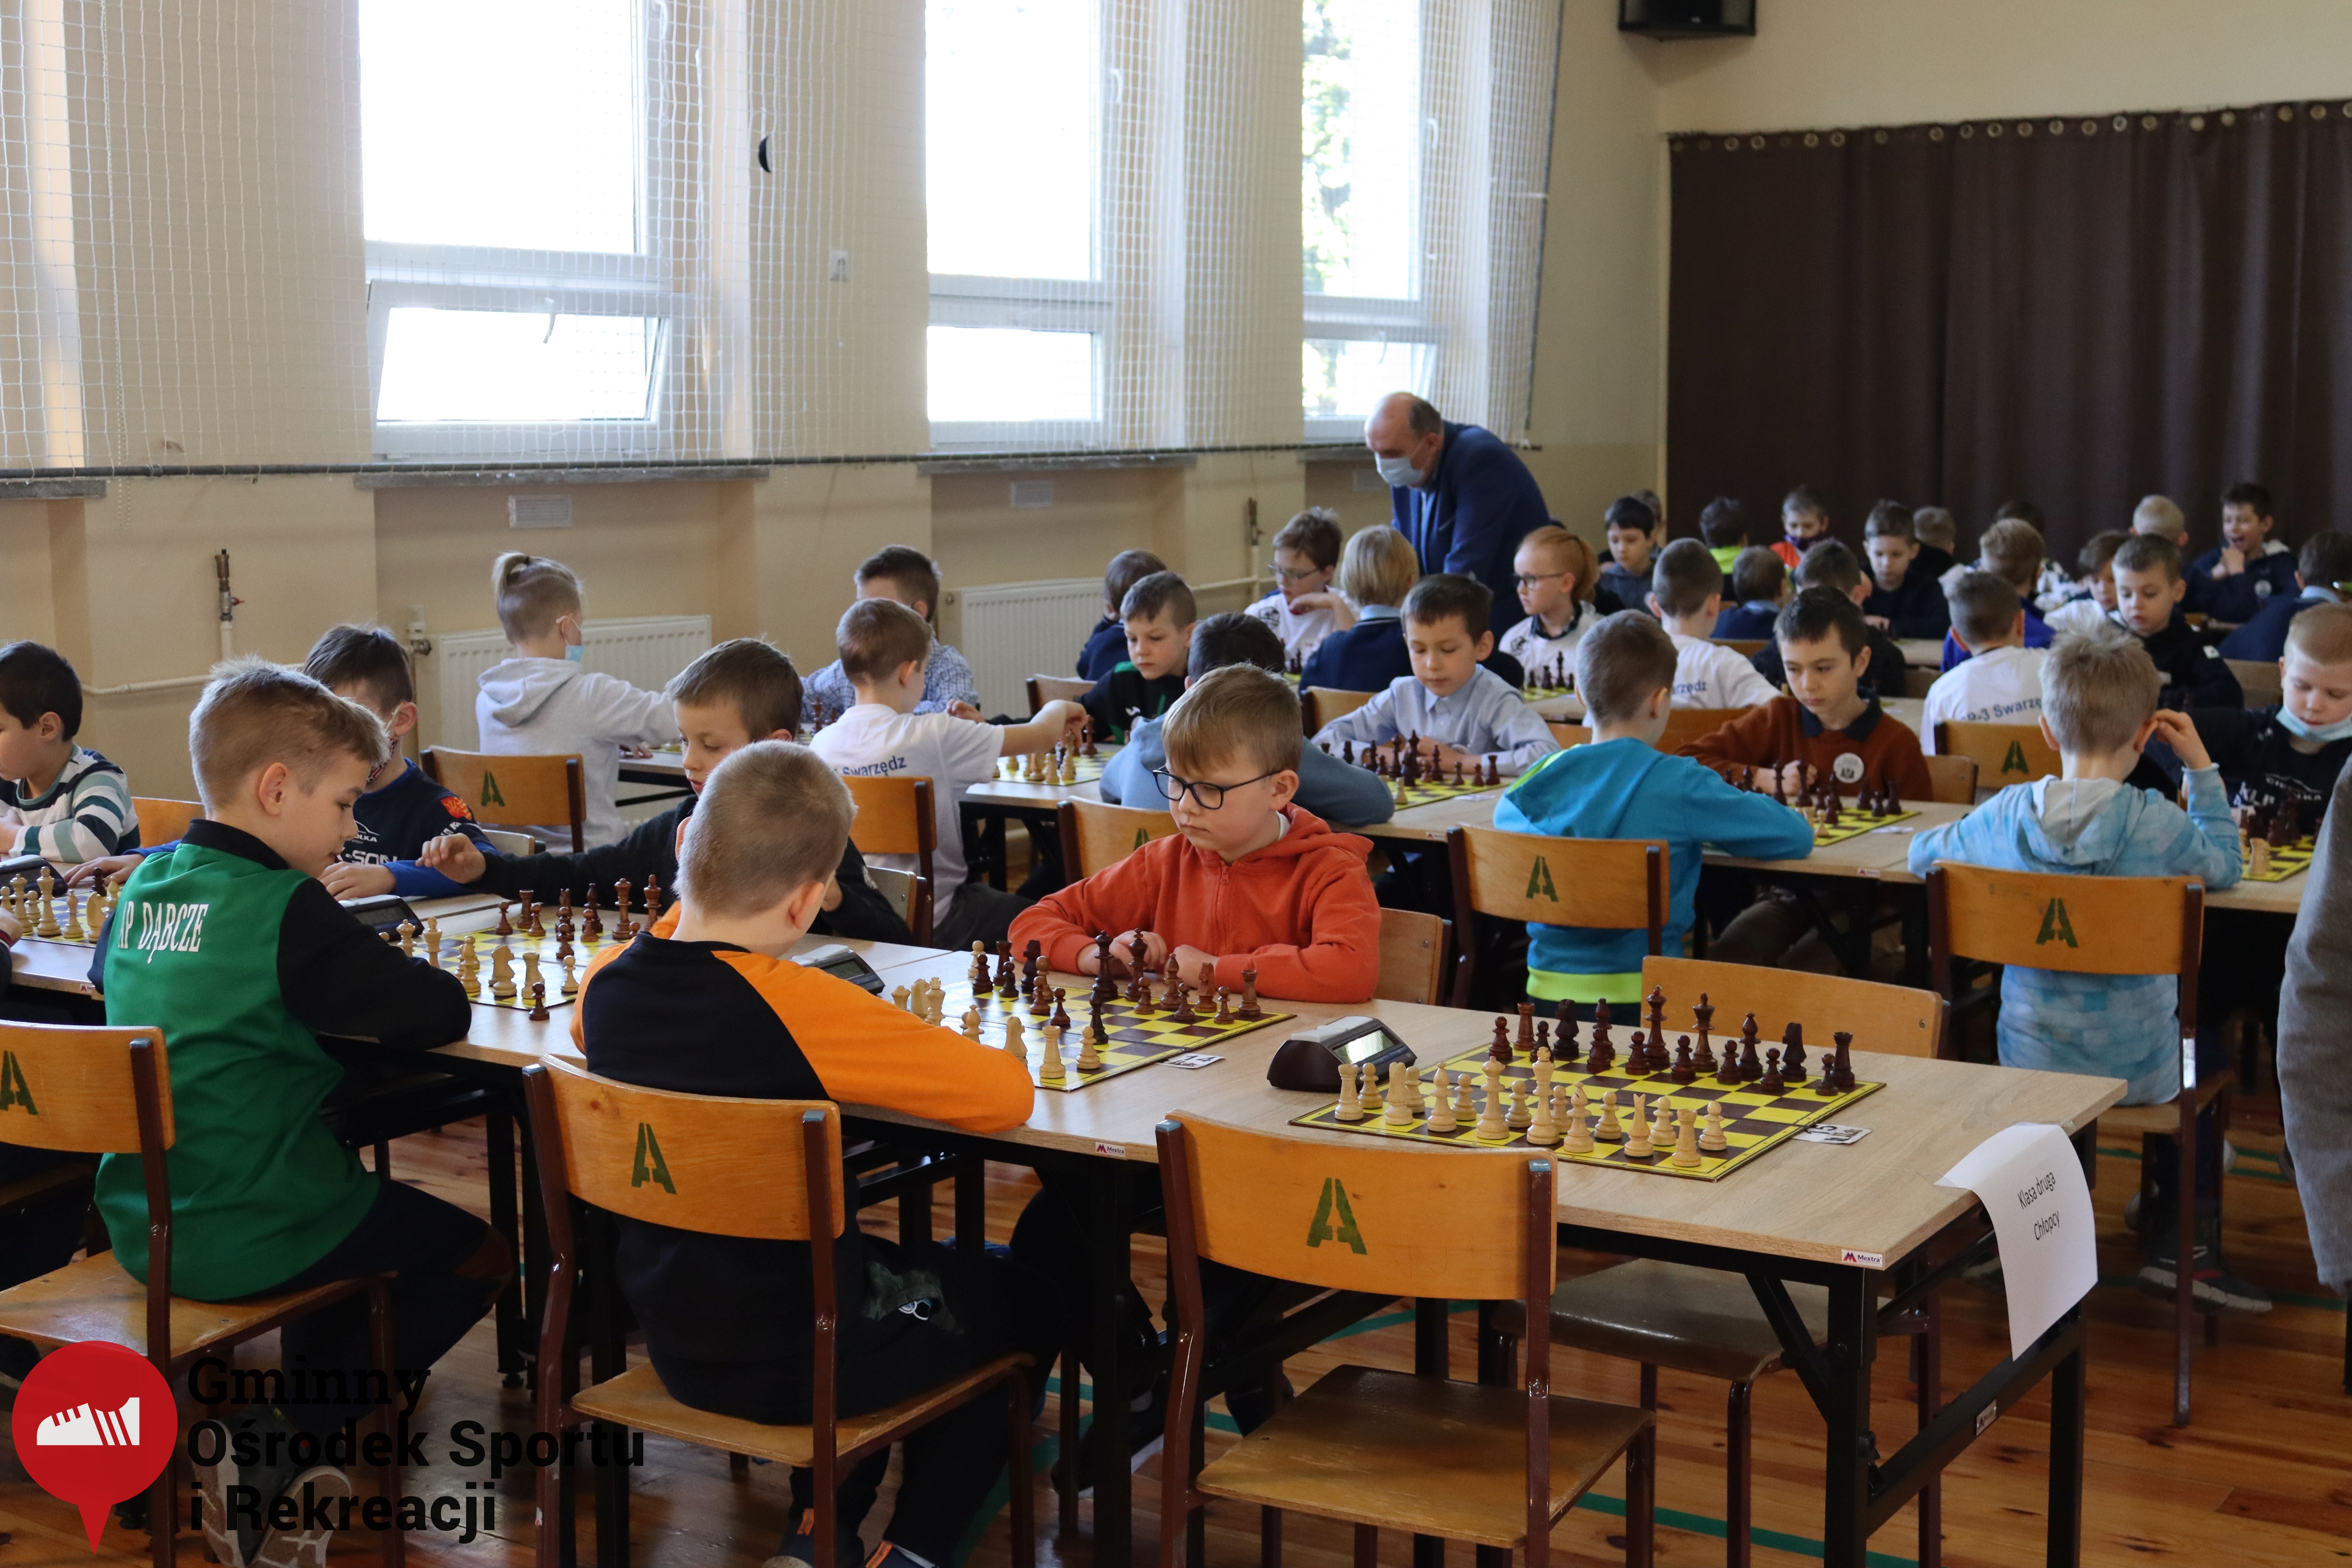 2022.03.12-13 Turniej szachowy - Edukacja przez Szachy025.jpg - 1,98 MB